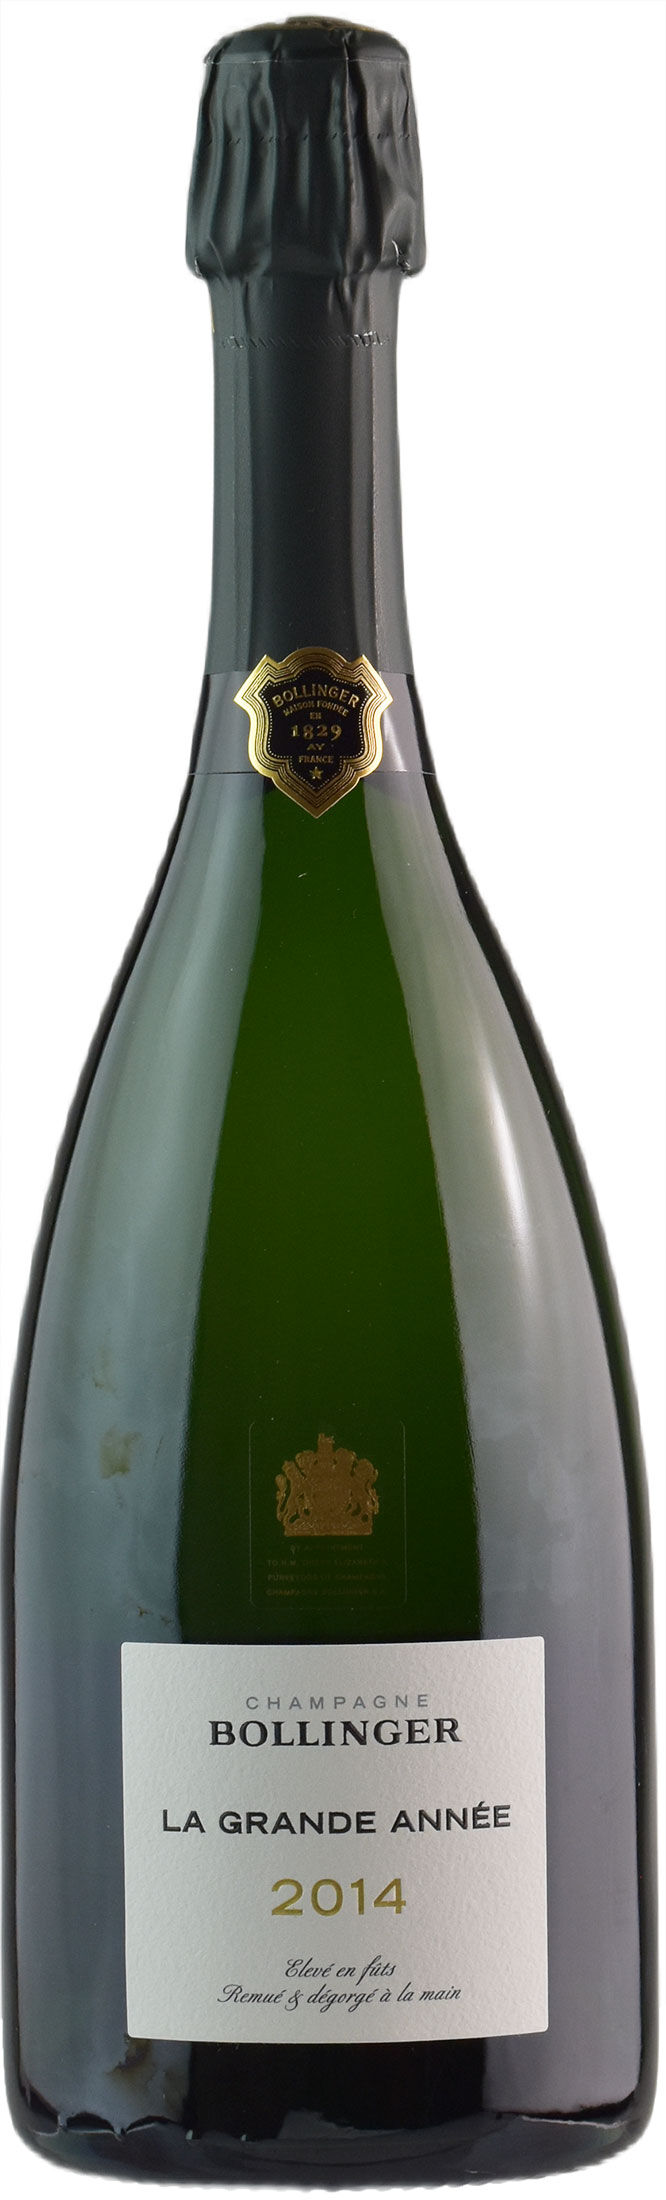 Bollinger Champagne Grande Année Brut 2014